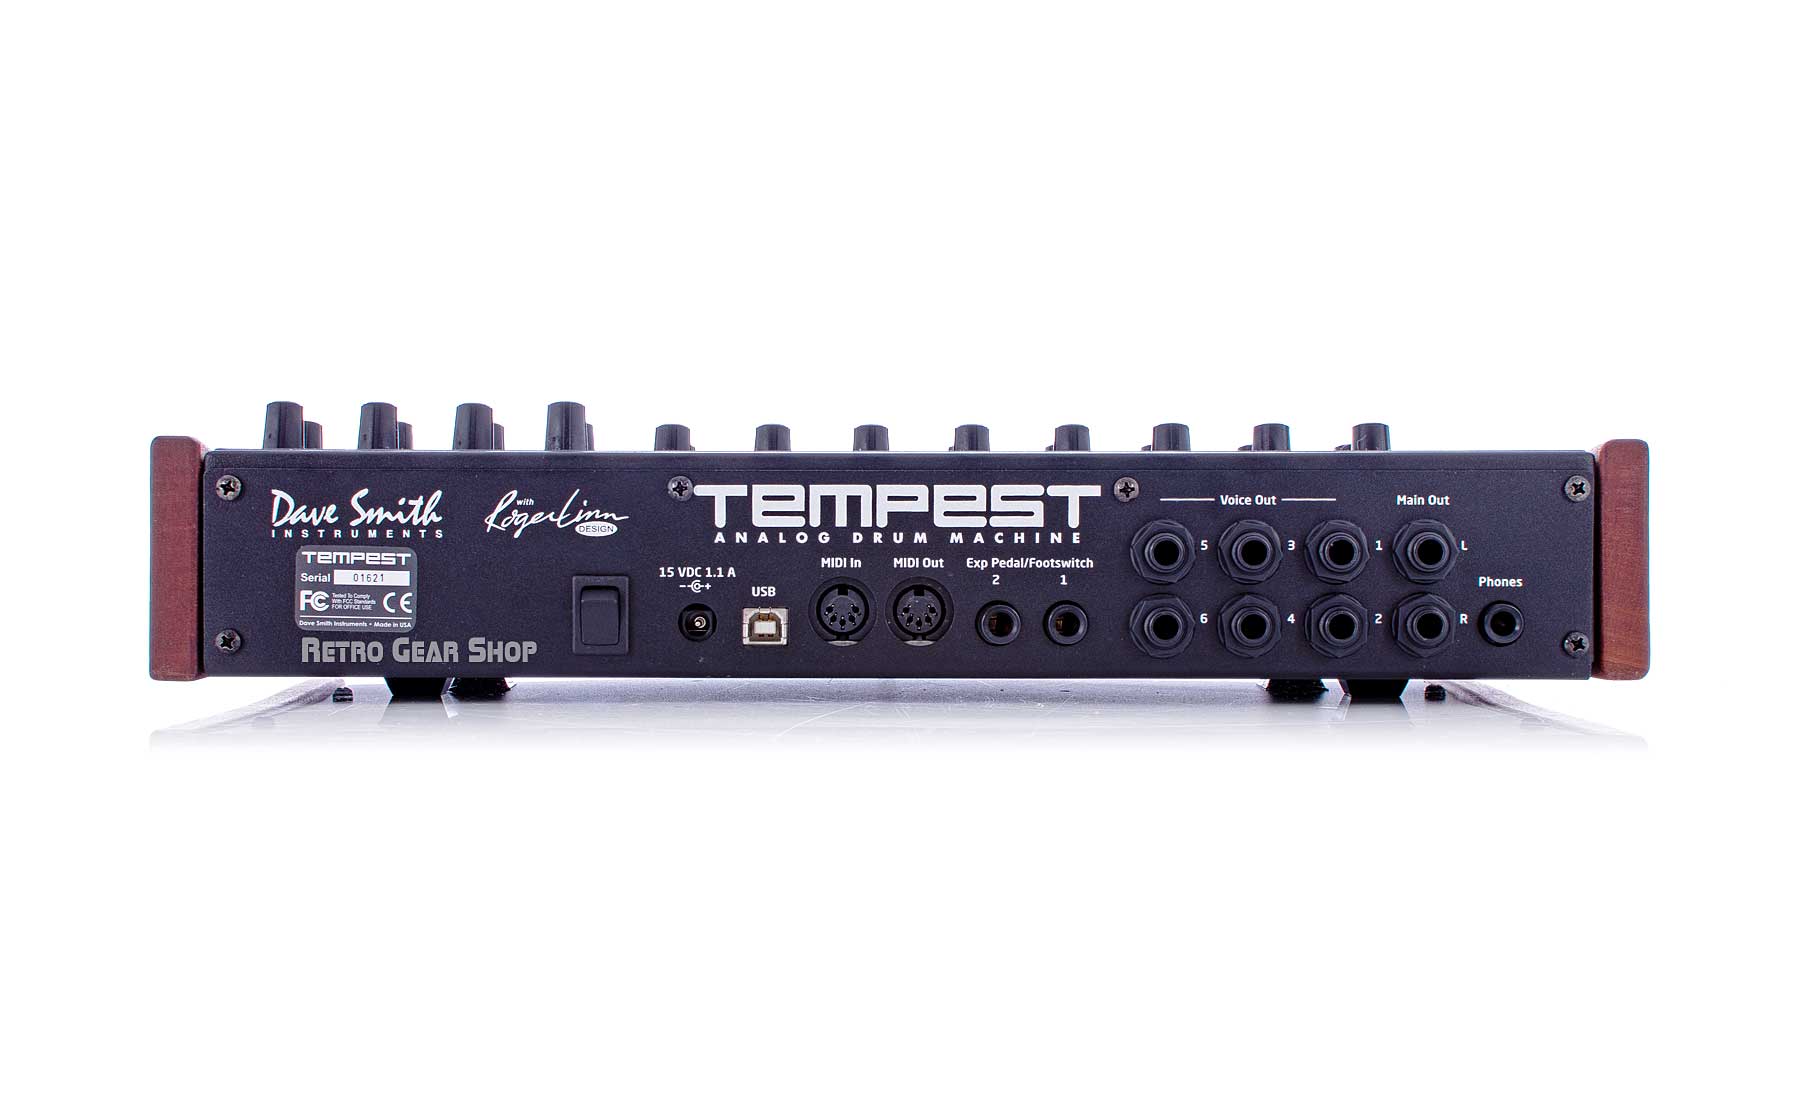 Dave Smith Instruments Tempest Analog Drum Machine – Retro Gear Shop